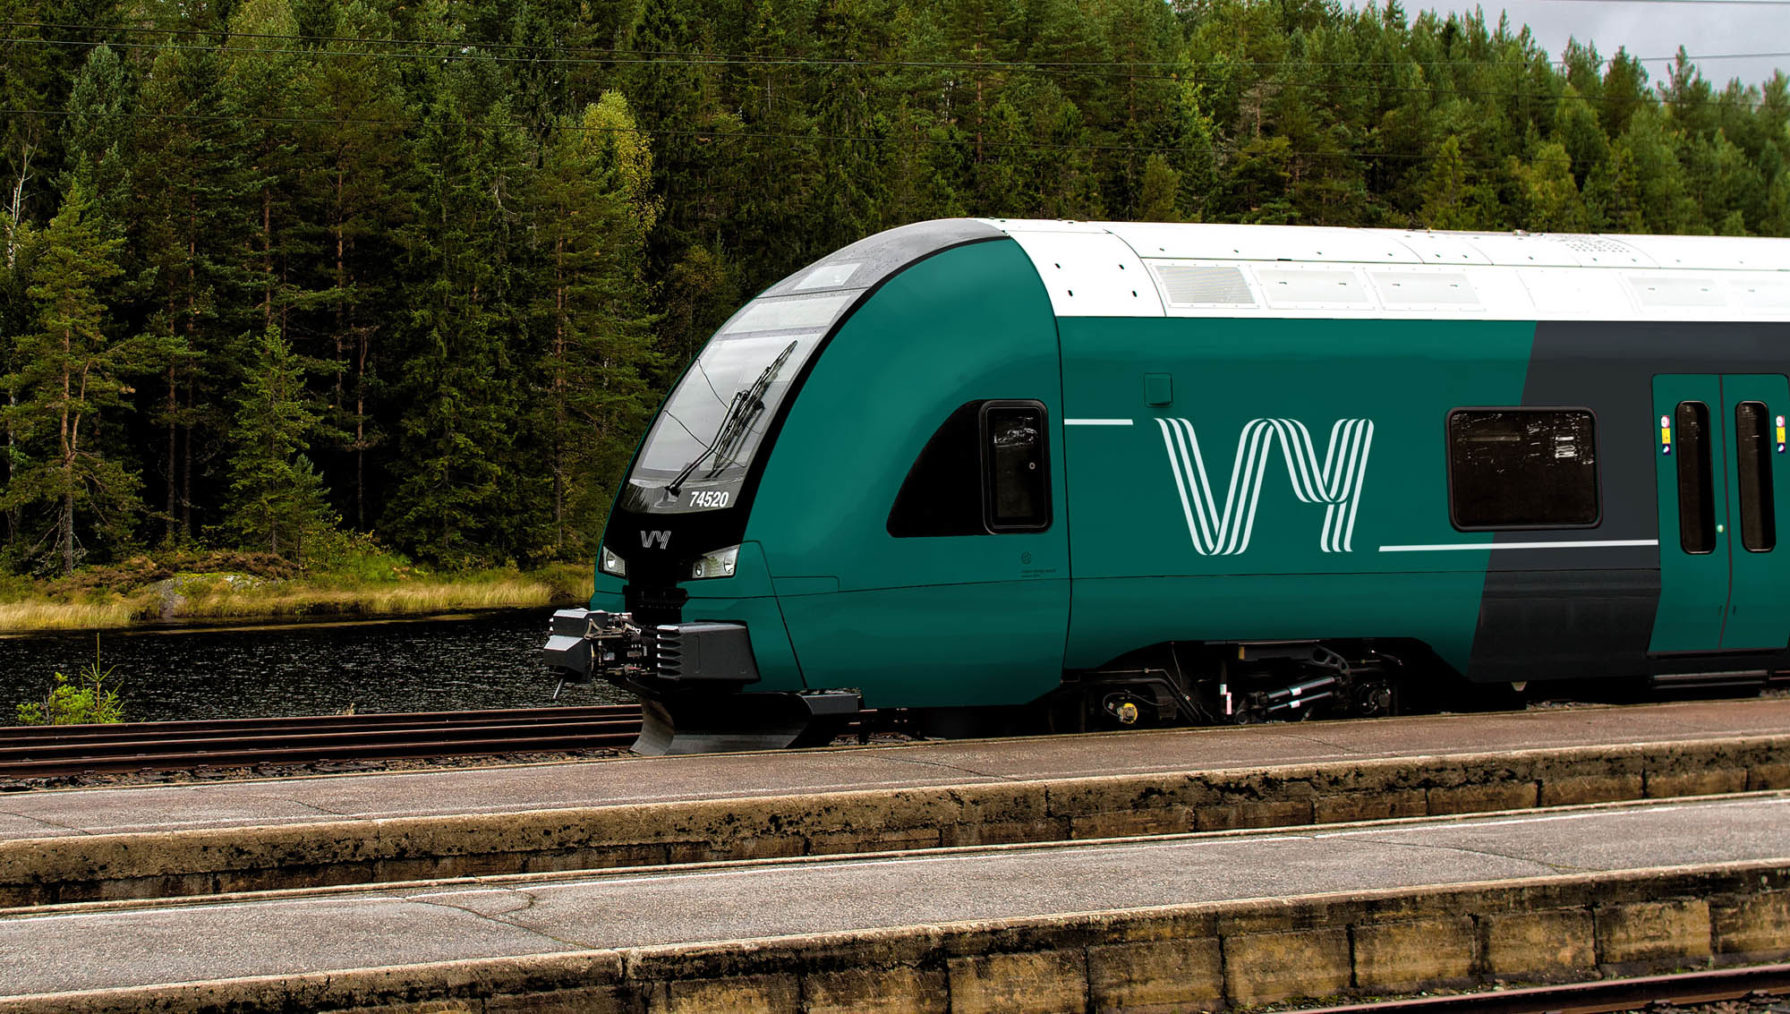 Bilde av tog med ny grønnfarge og Vy-logo.